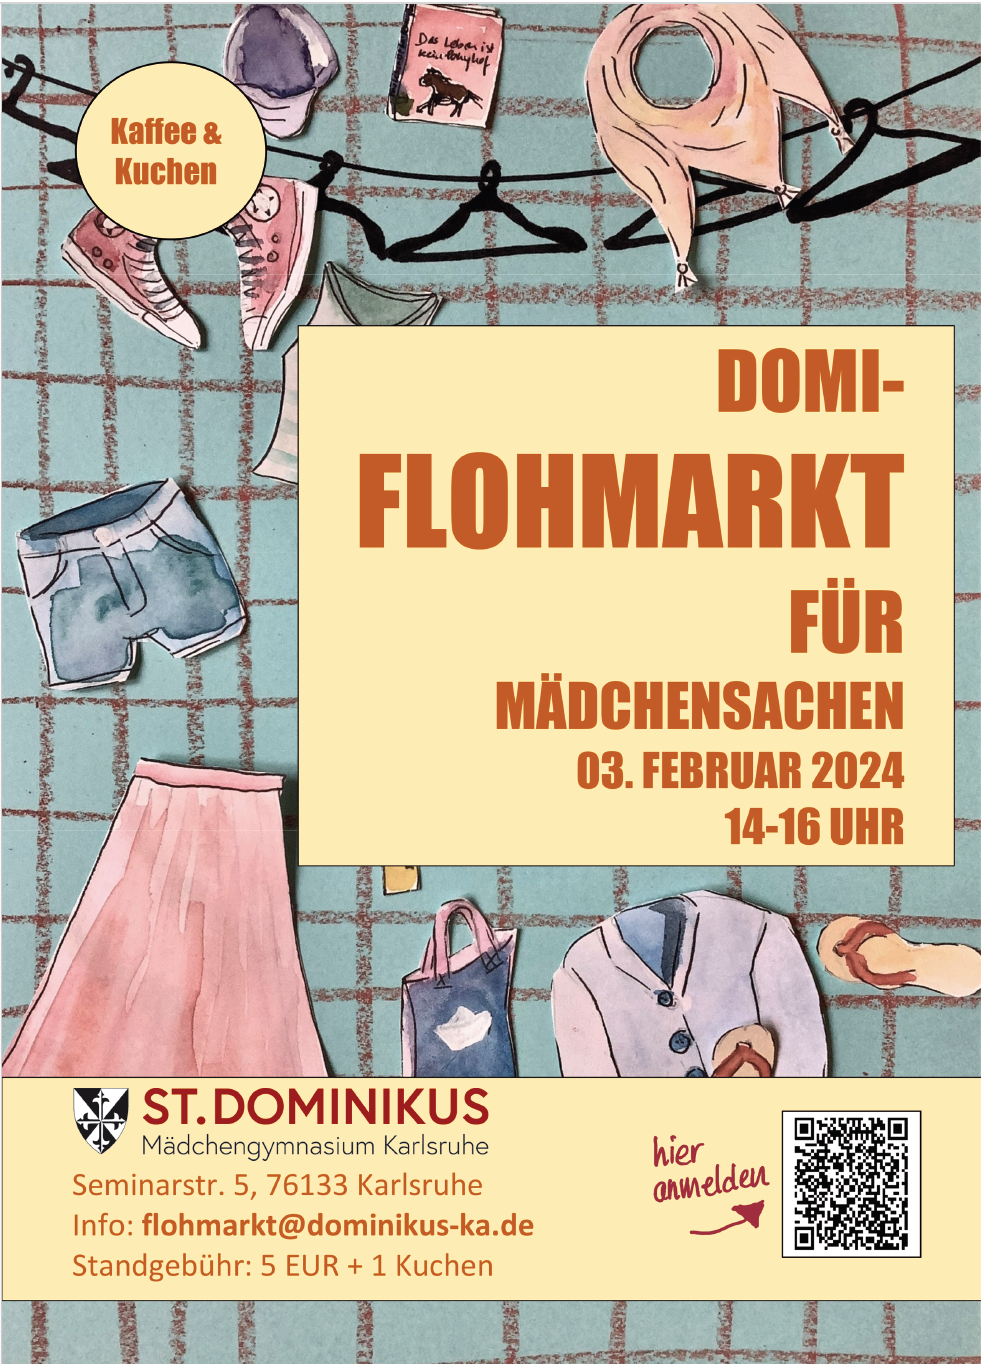 Domi-Flohmarkt für Mädchensachen